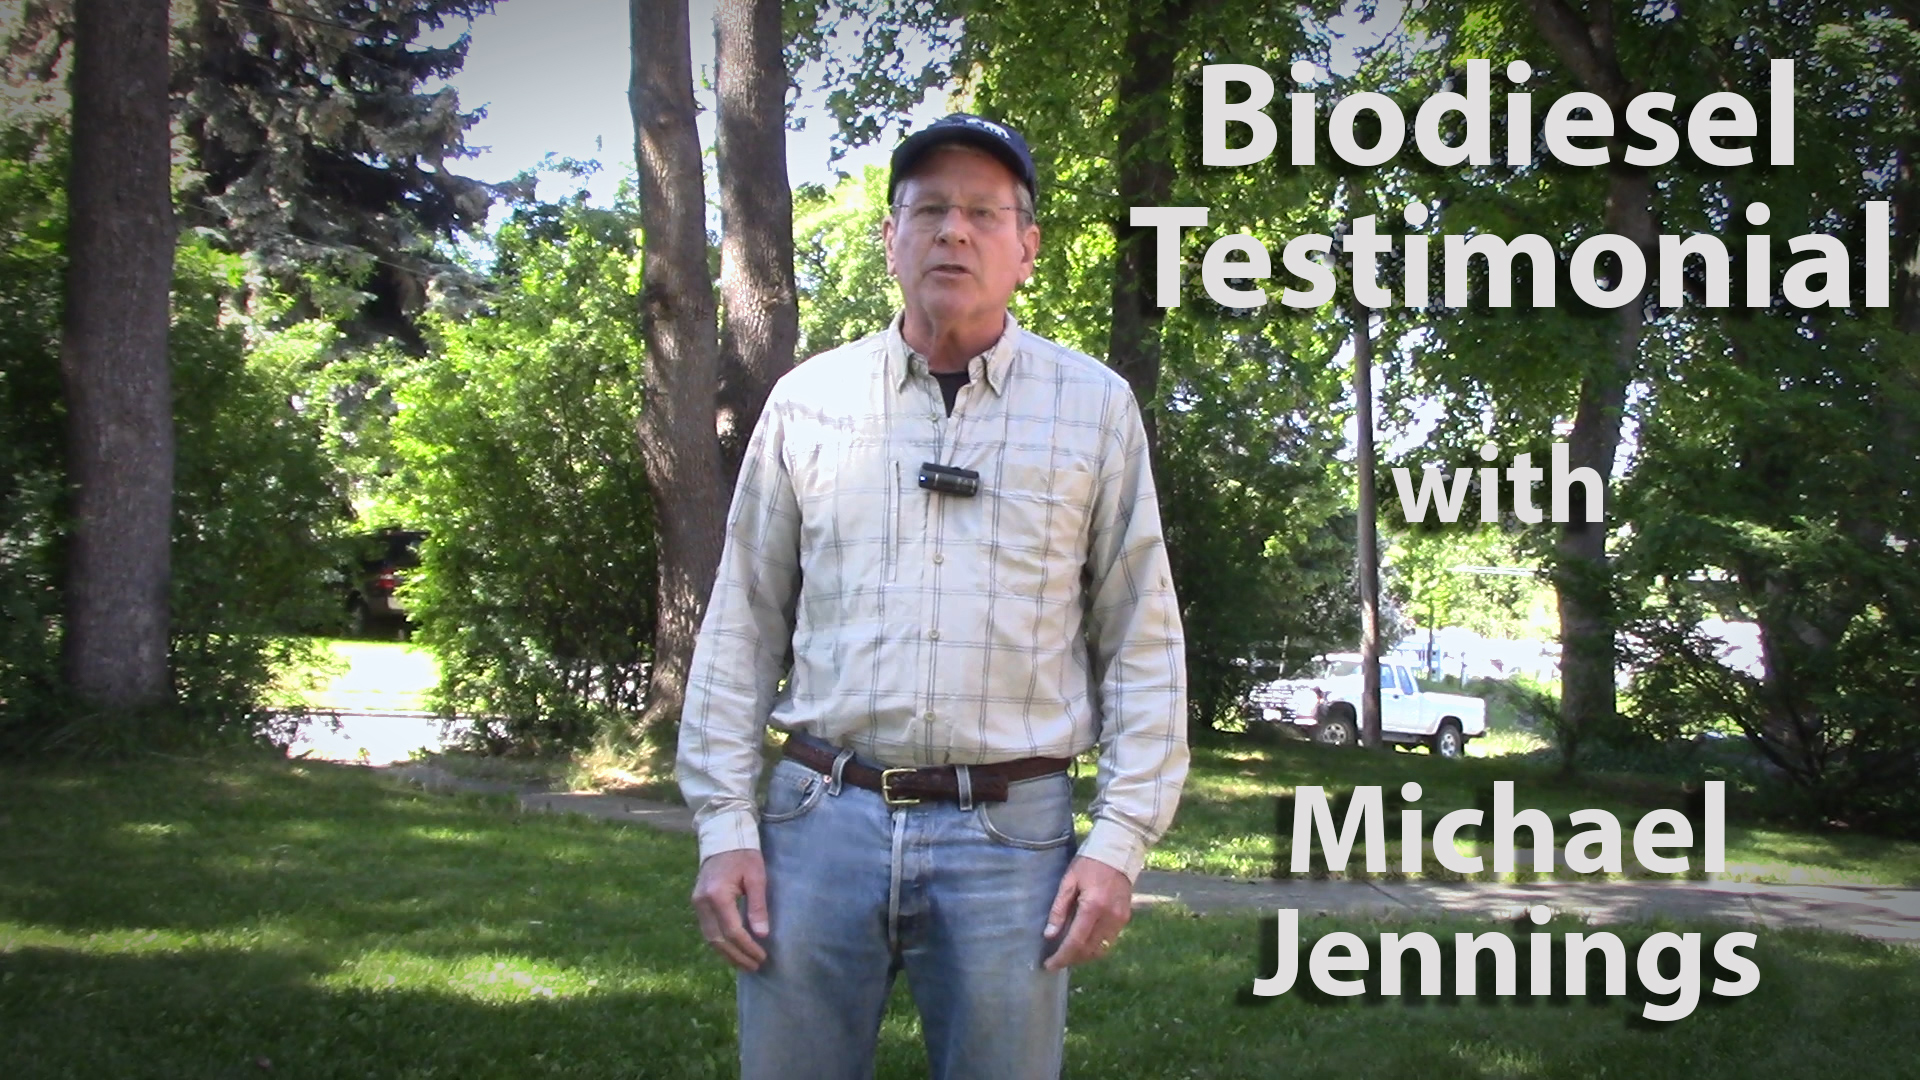 Biodiesel Testimonial with Michael Jennings